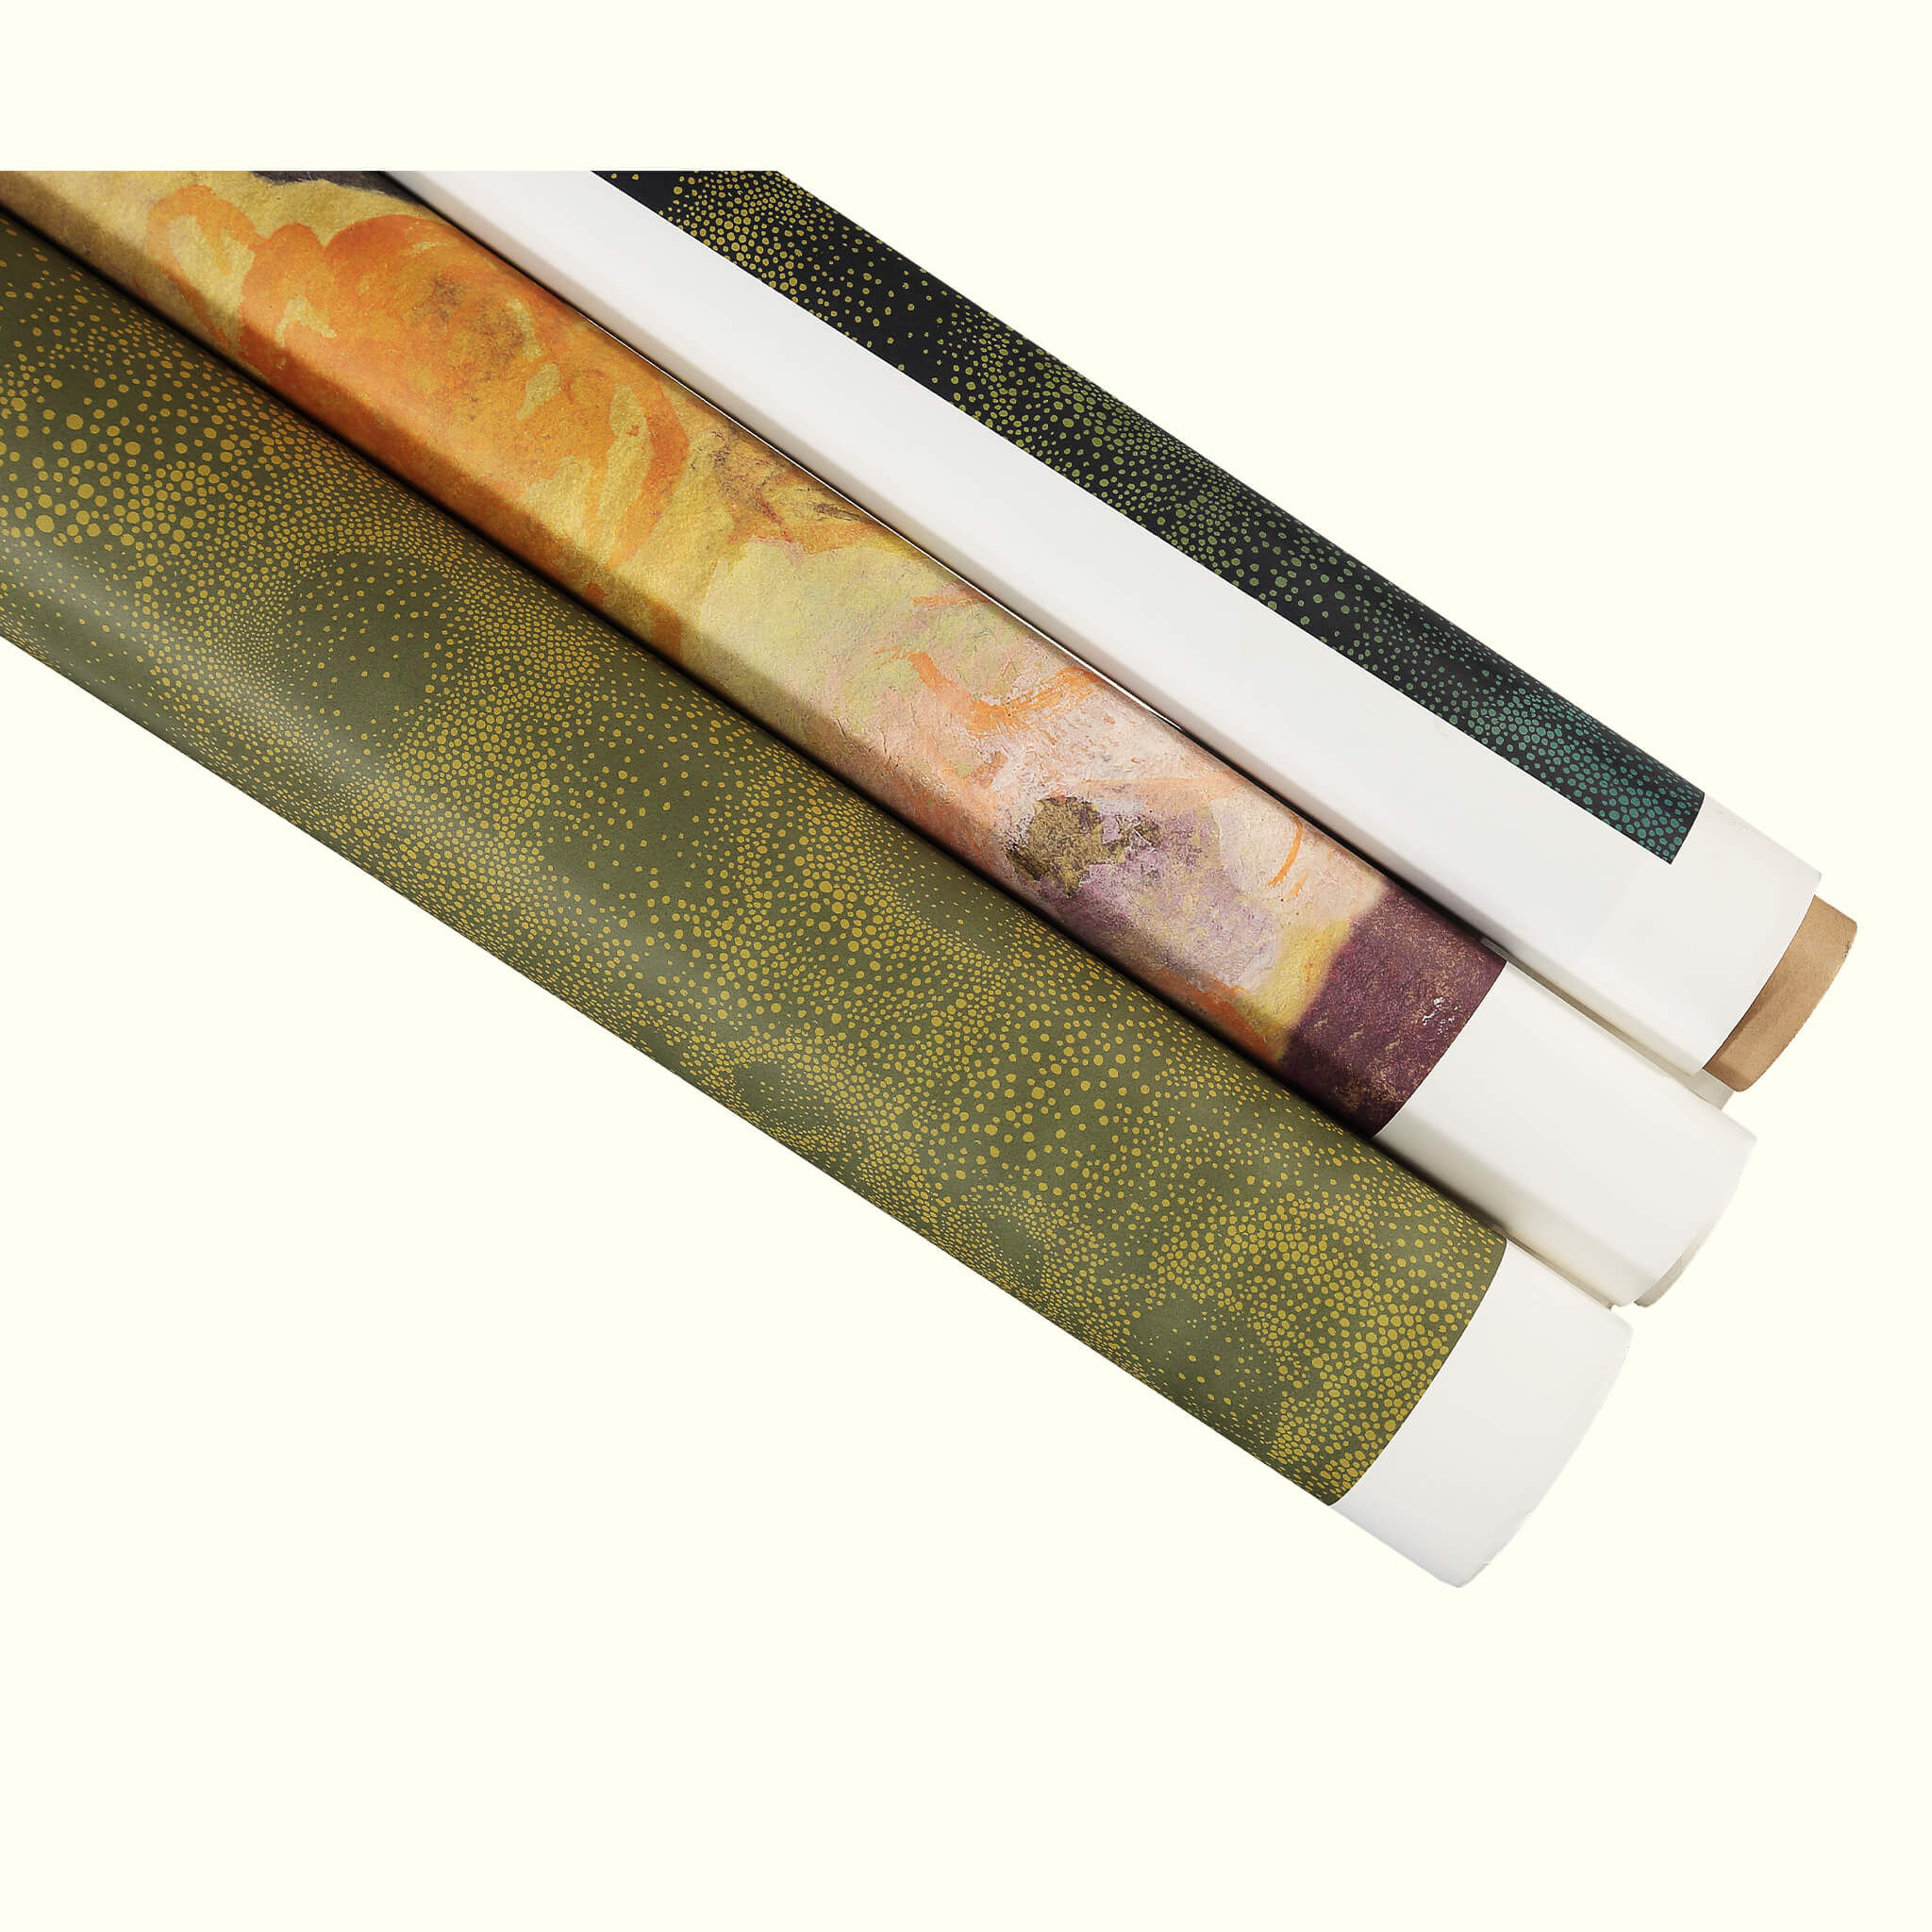 Wallpaper rolls in different designs - GvE&Co (Georgina von Etzdorf and company)